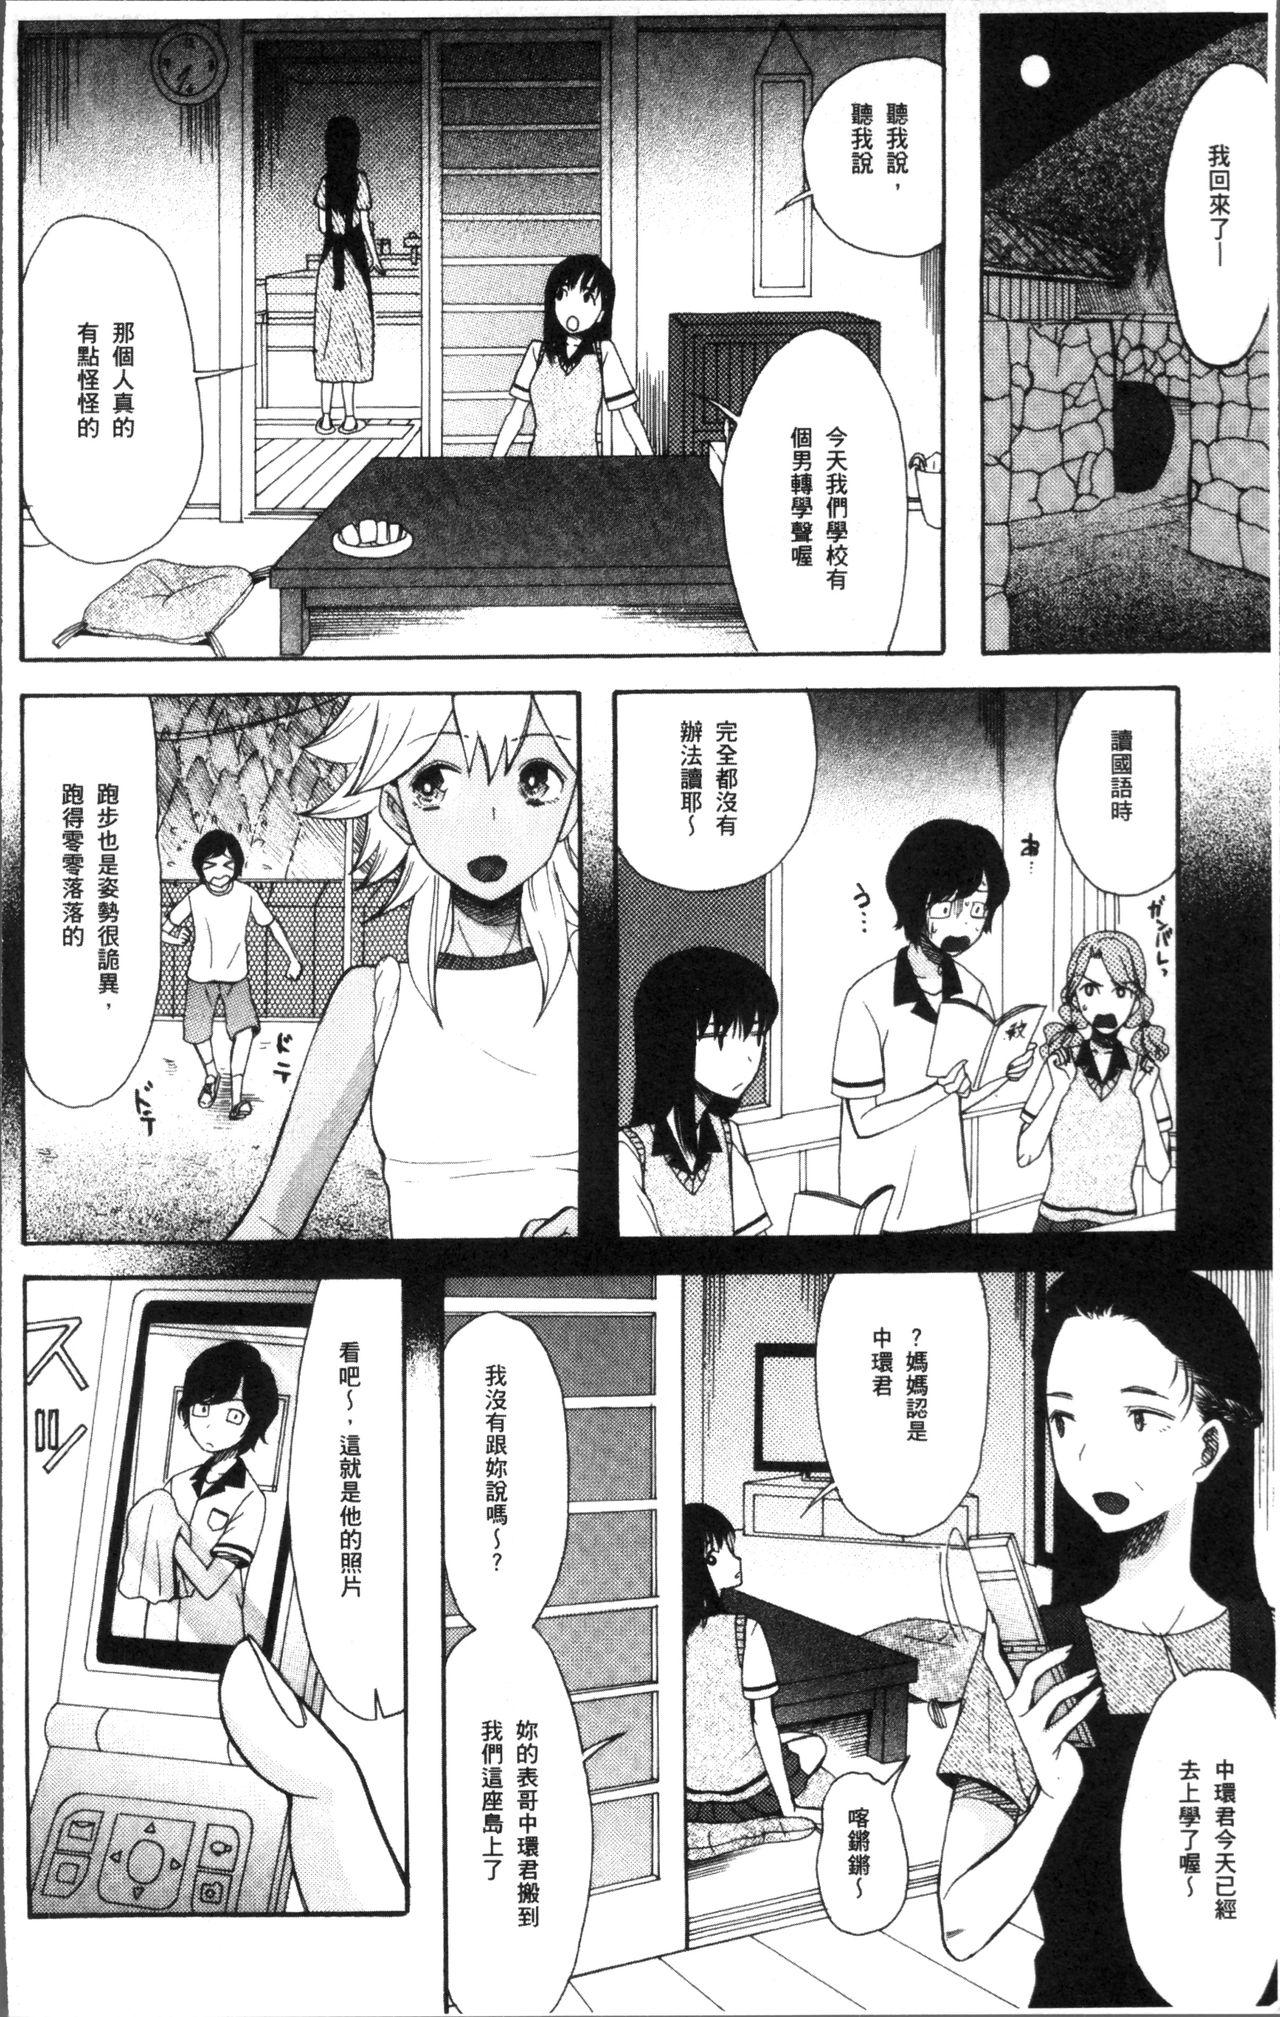 Buttfucking Shoujo Renzoku Yuukai Jiken Hadaka no Nurunuru Island Gets - Page 10